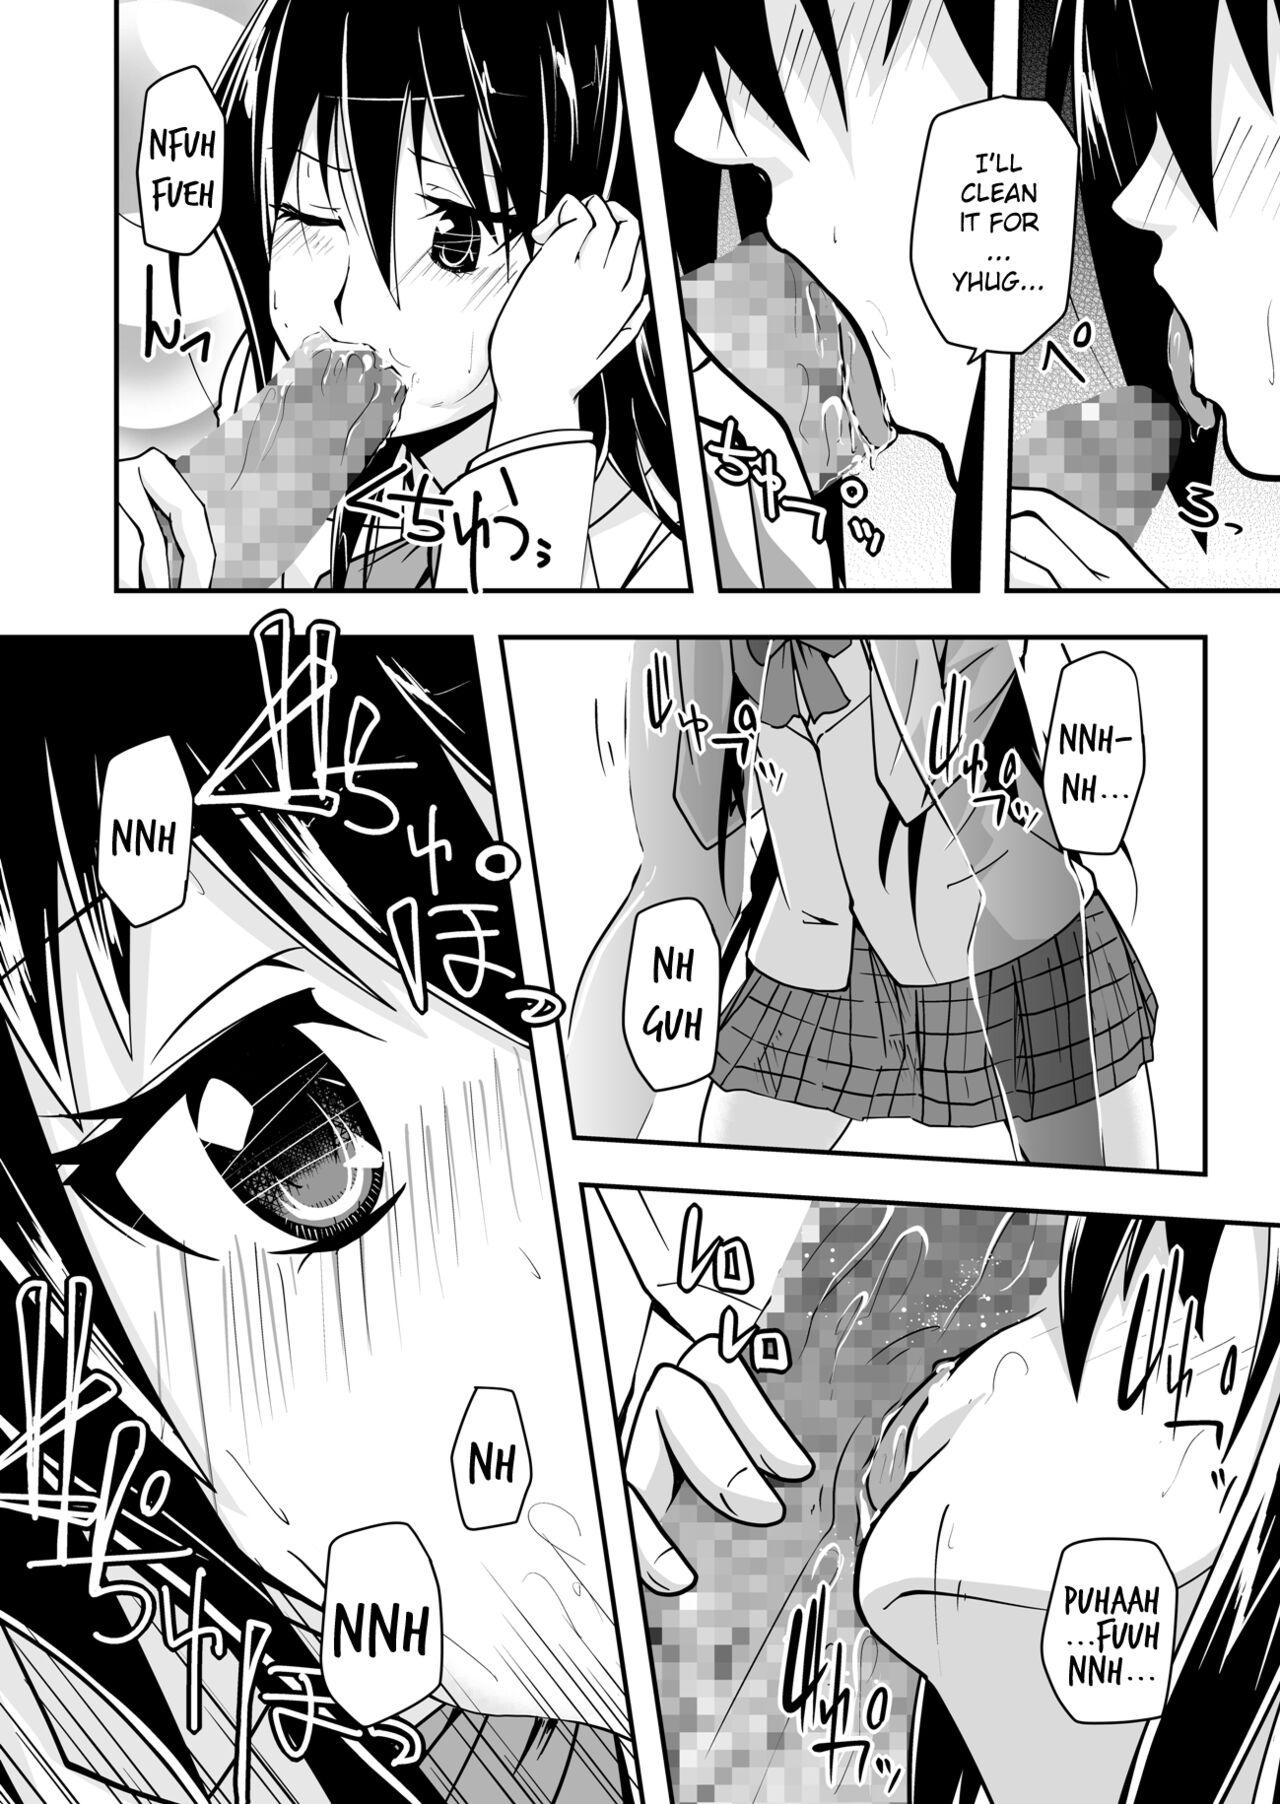 Gayporn *********! 1 - Seitokai yakuindomo Bigbooty - Page 10